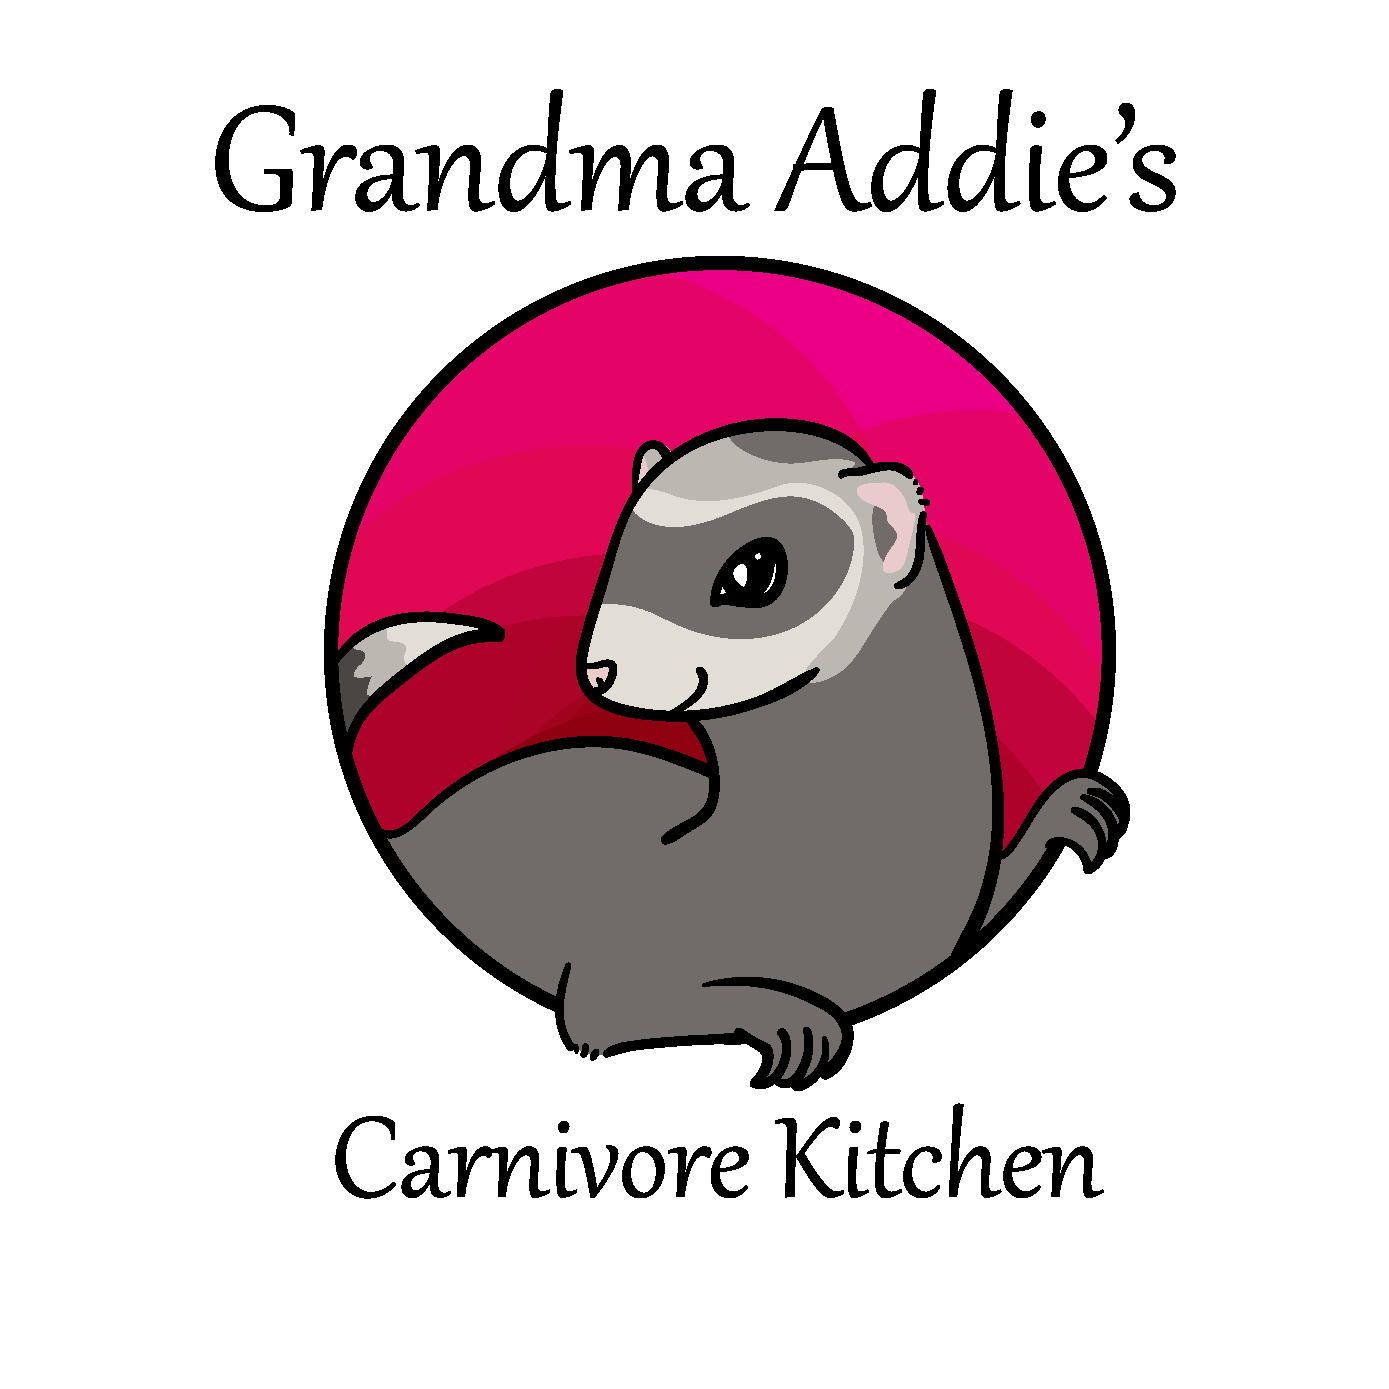 Grandma Addie's Carnivore Kitchen